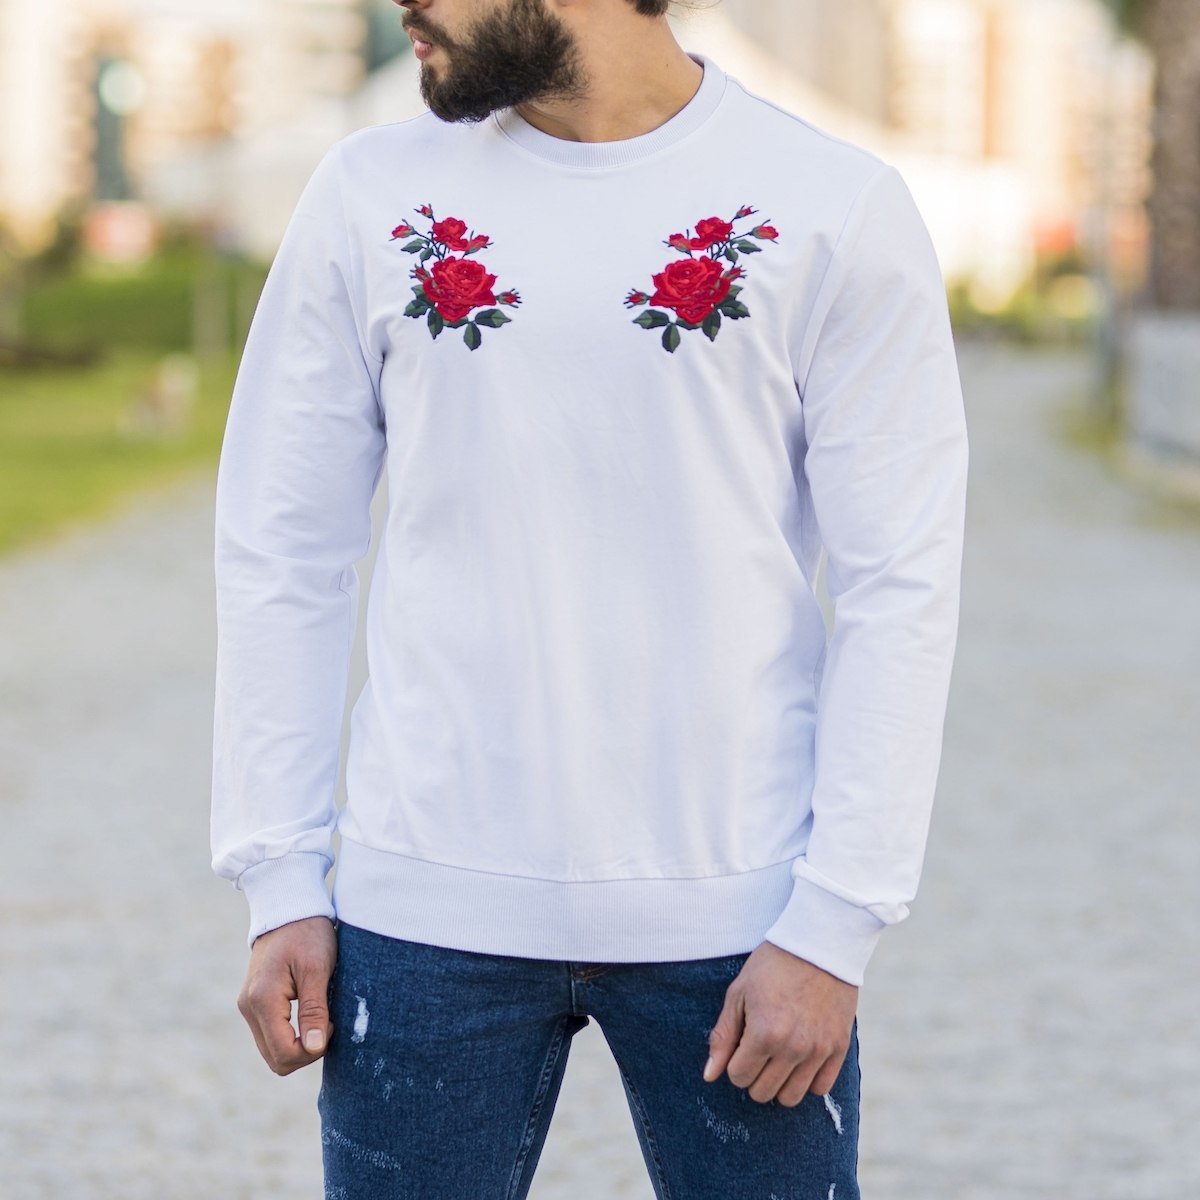 Herren Sweatshirt mit Rosen Detail an der Brust in weiß - 1